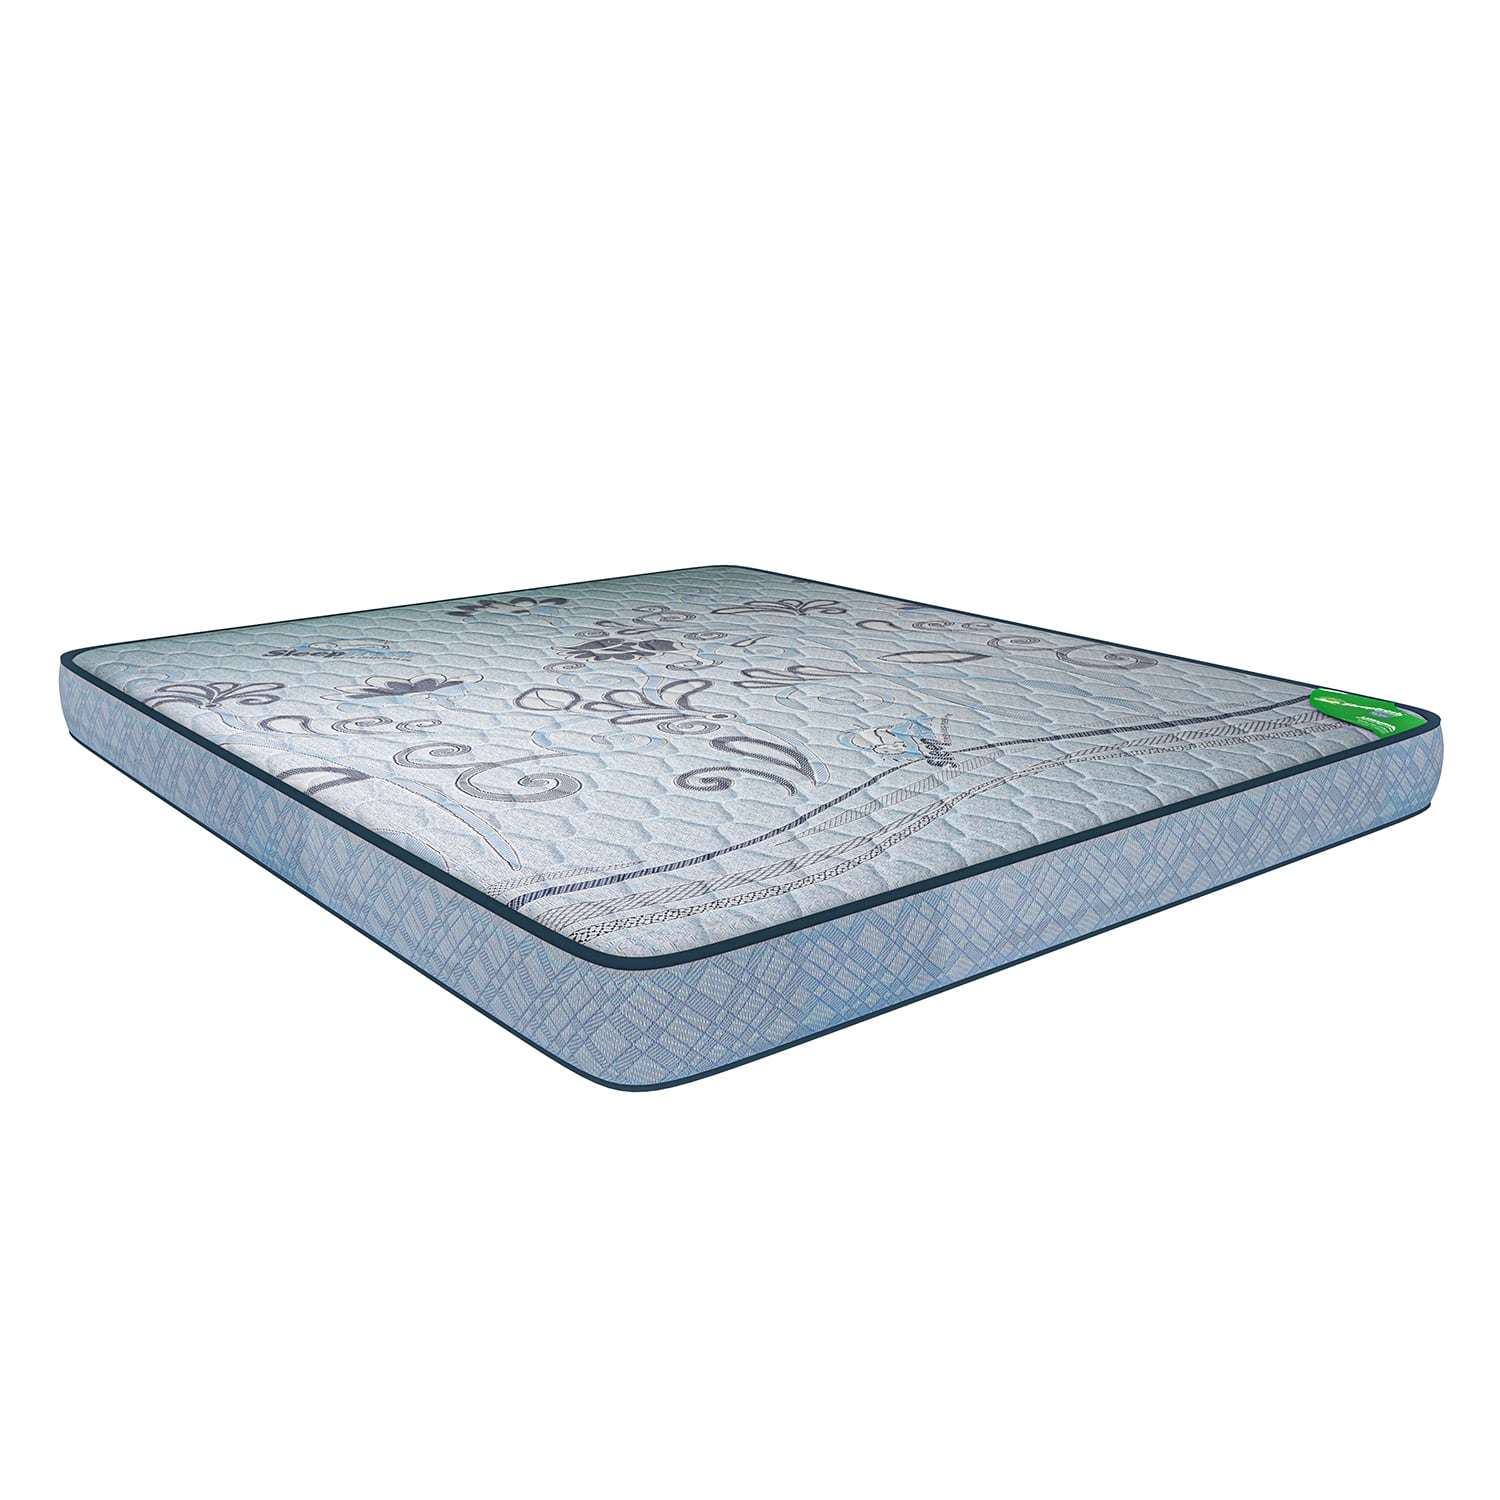 sleepfresh perfect balance mattress size carrycot